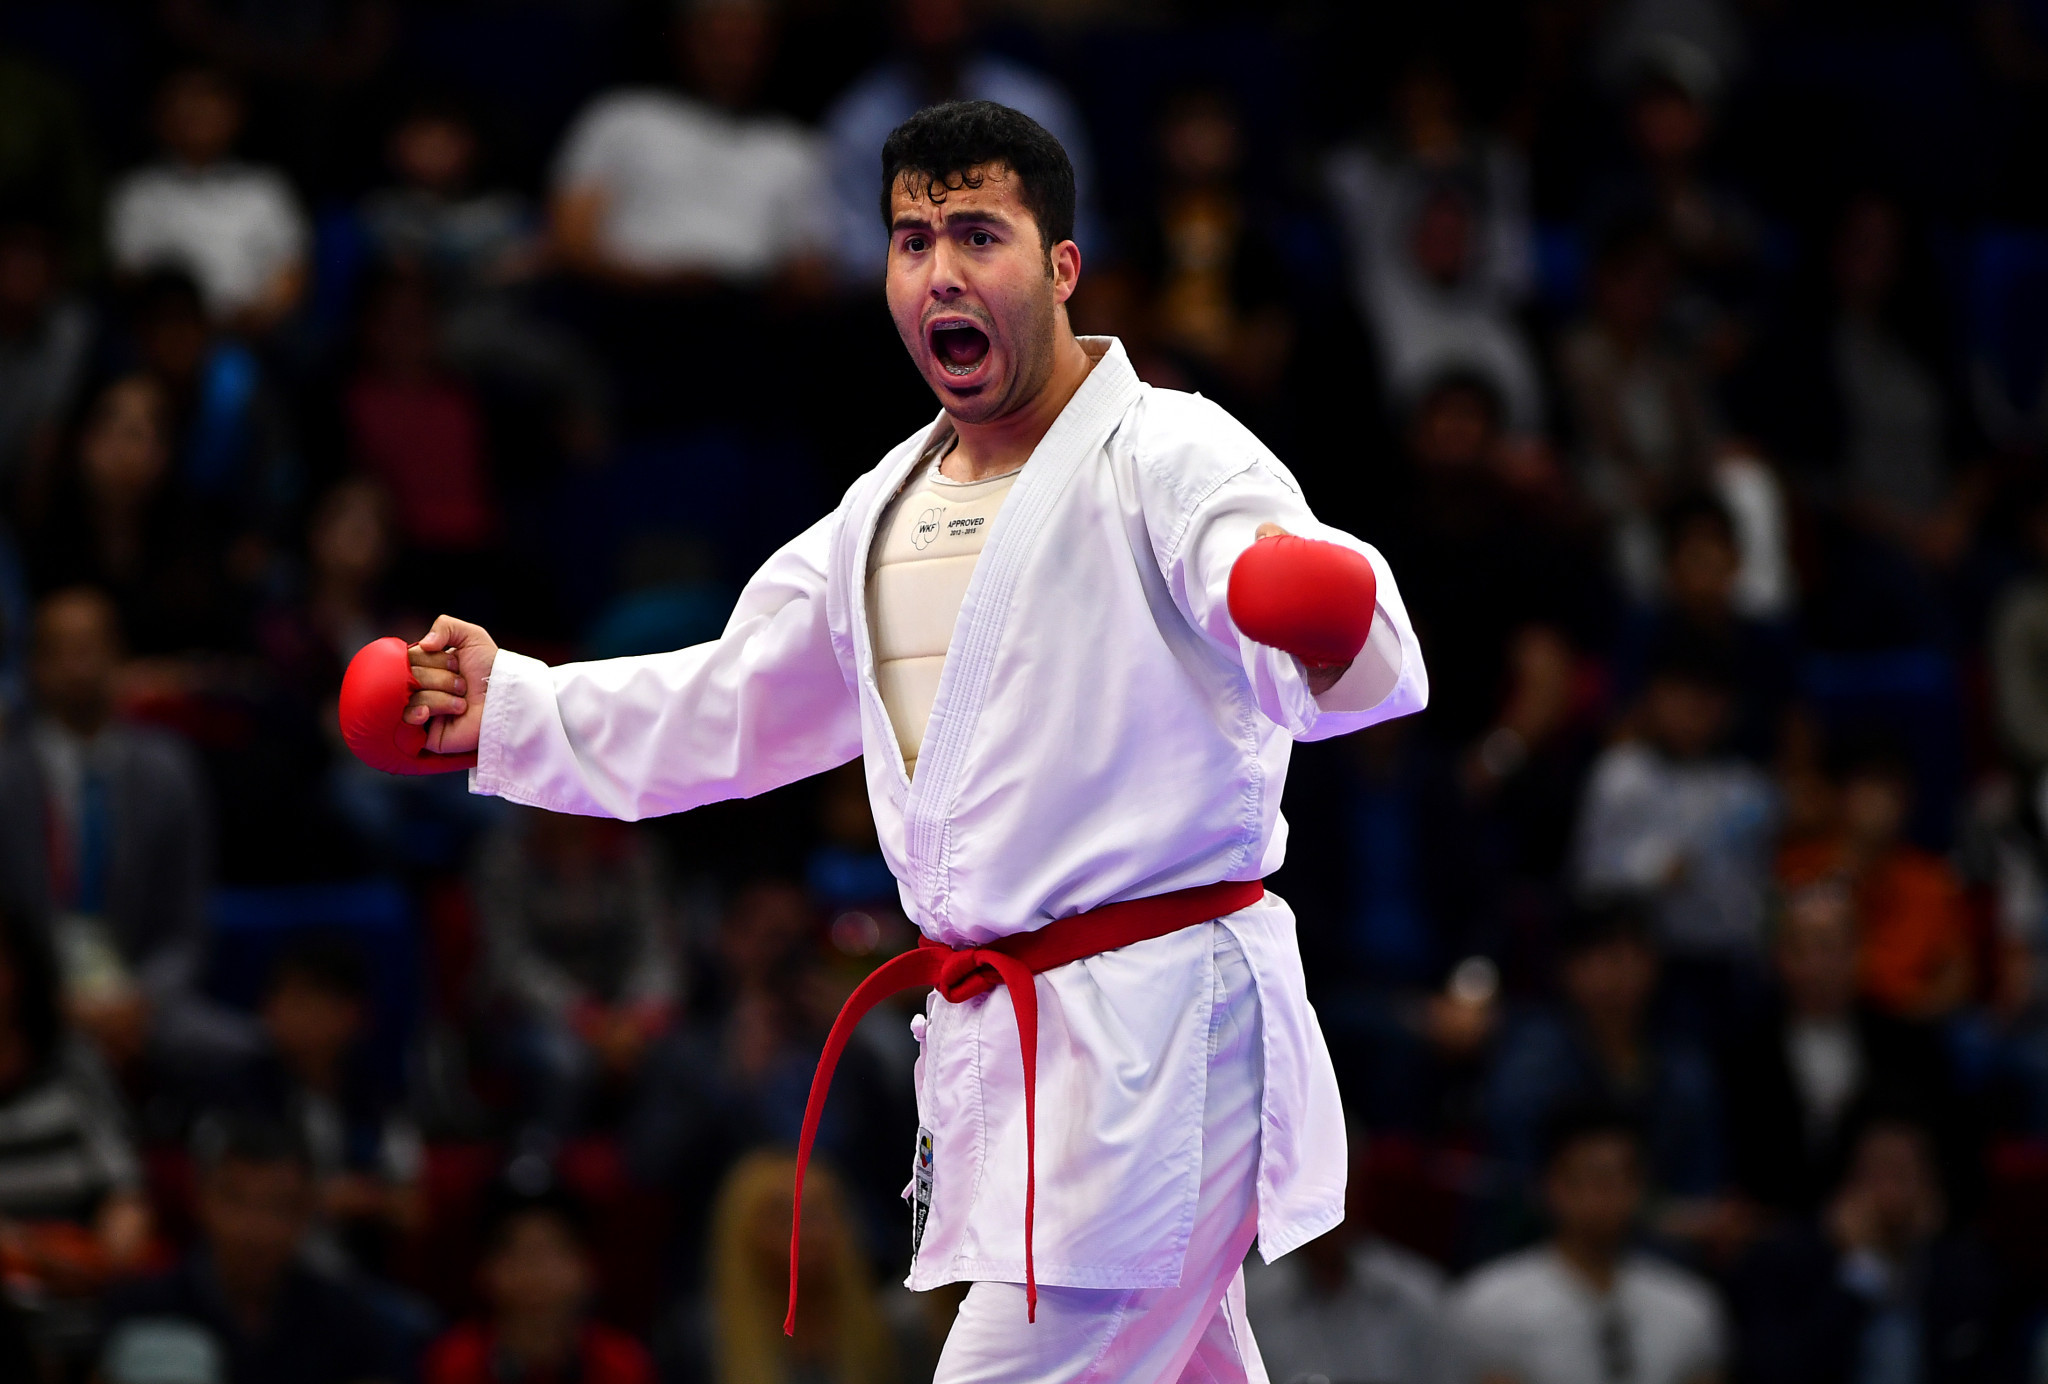 El iraní Sajad Ghanzadeh se prepara para un día completo de actuaciones y gana la categoría masculina de kumid + 84 kg en el evento Karate-1 de la Premier League en Estambul © Getty Images